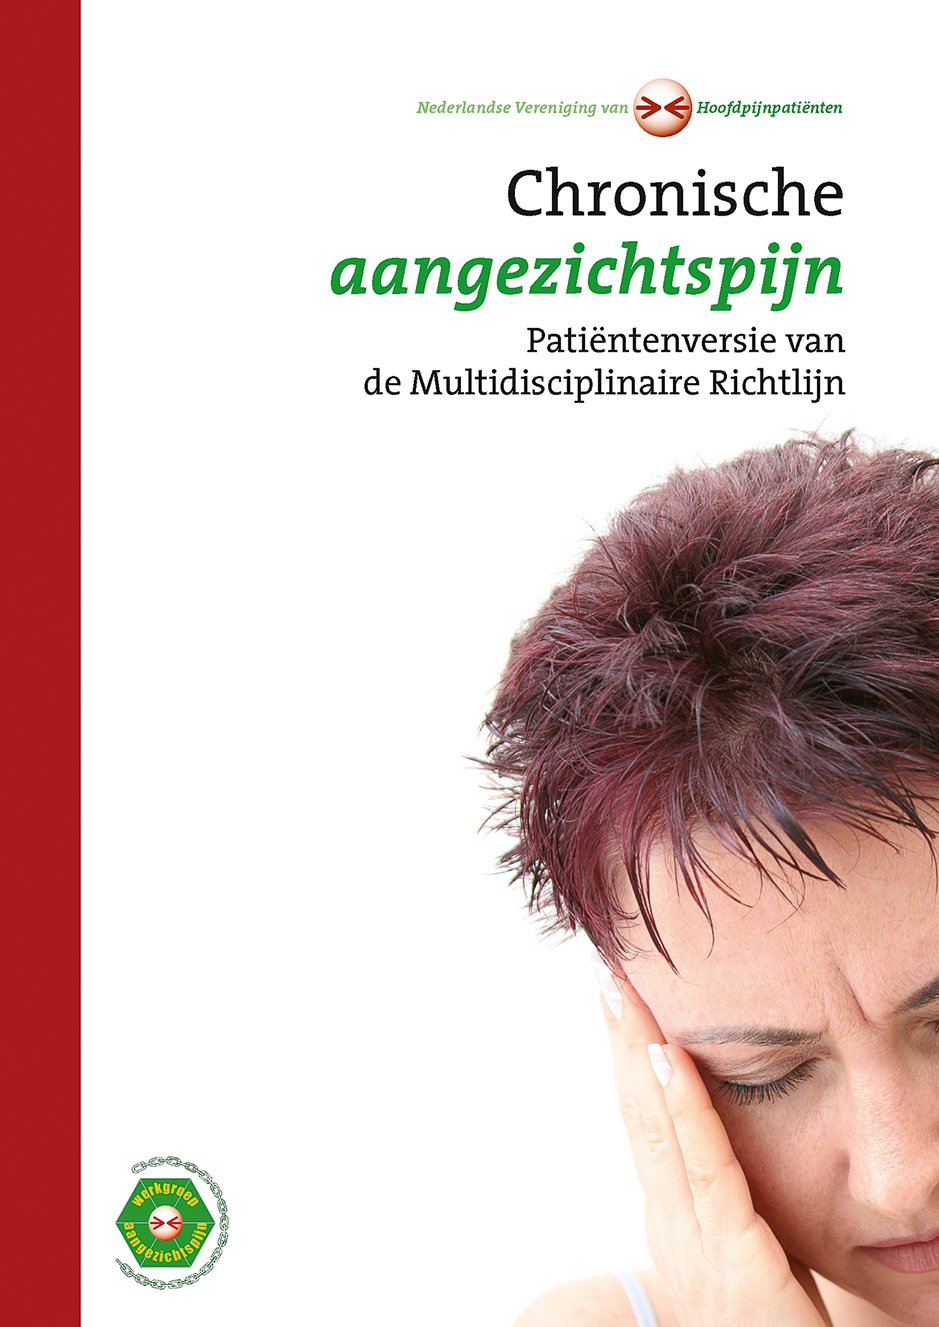 Arthralgie, Myalgie - Traducere în română - exemple în germană | Reverso Context